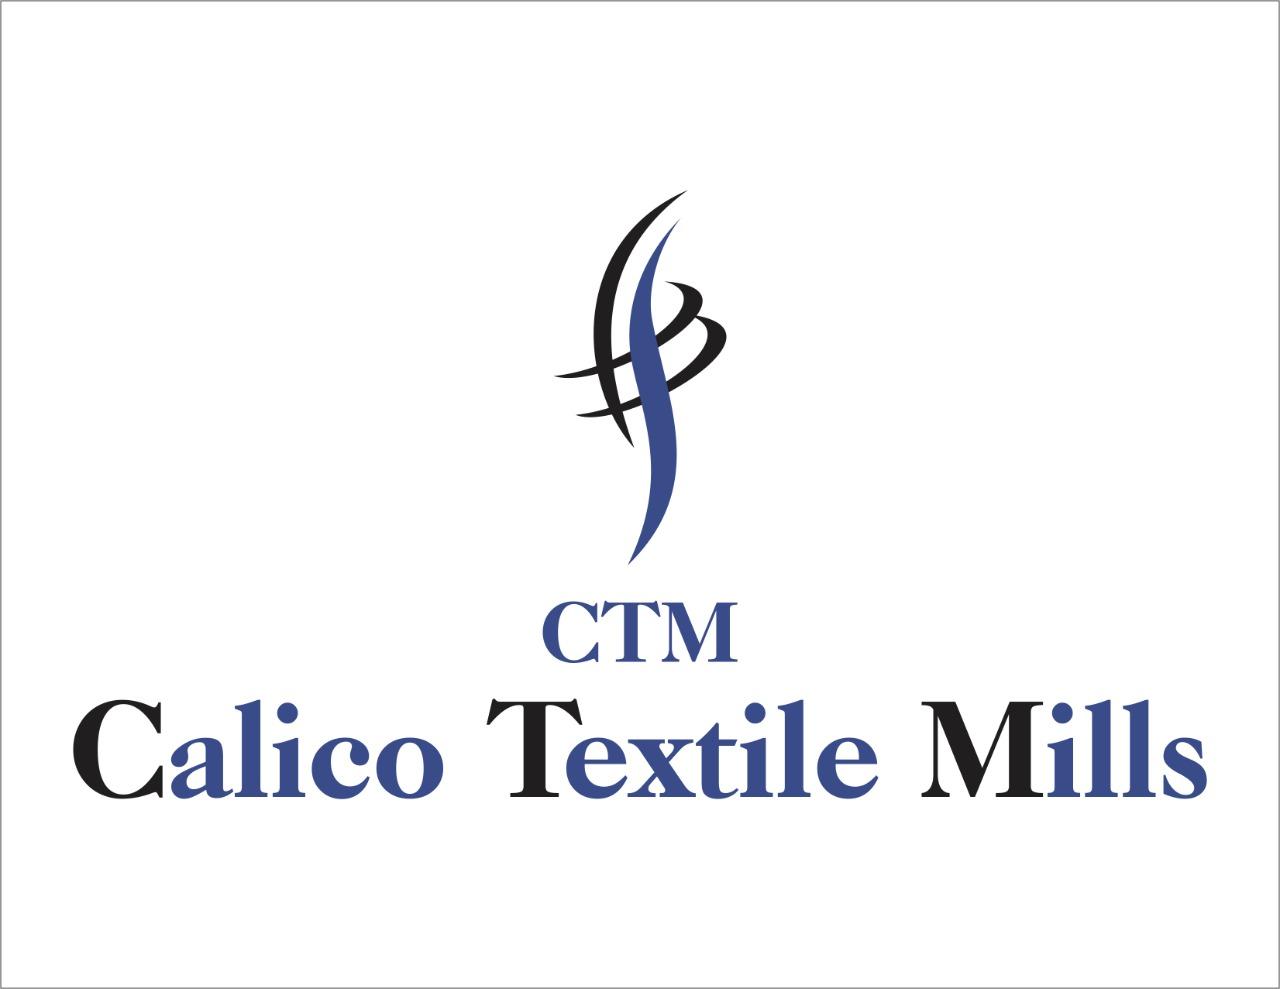 Calico Textile Mills